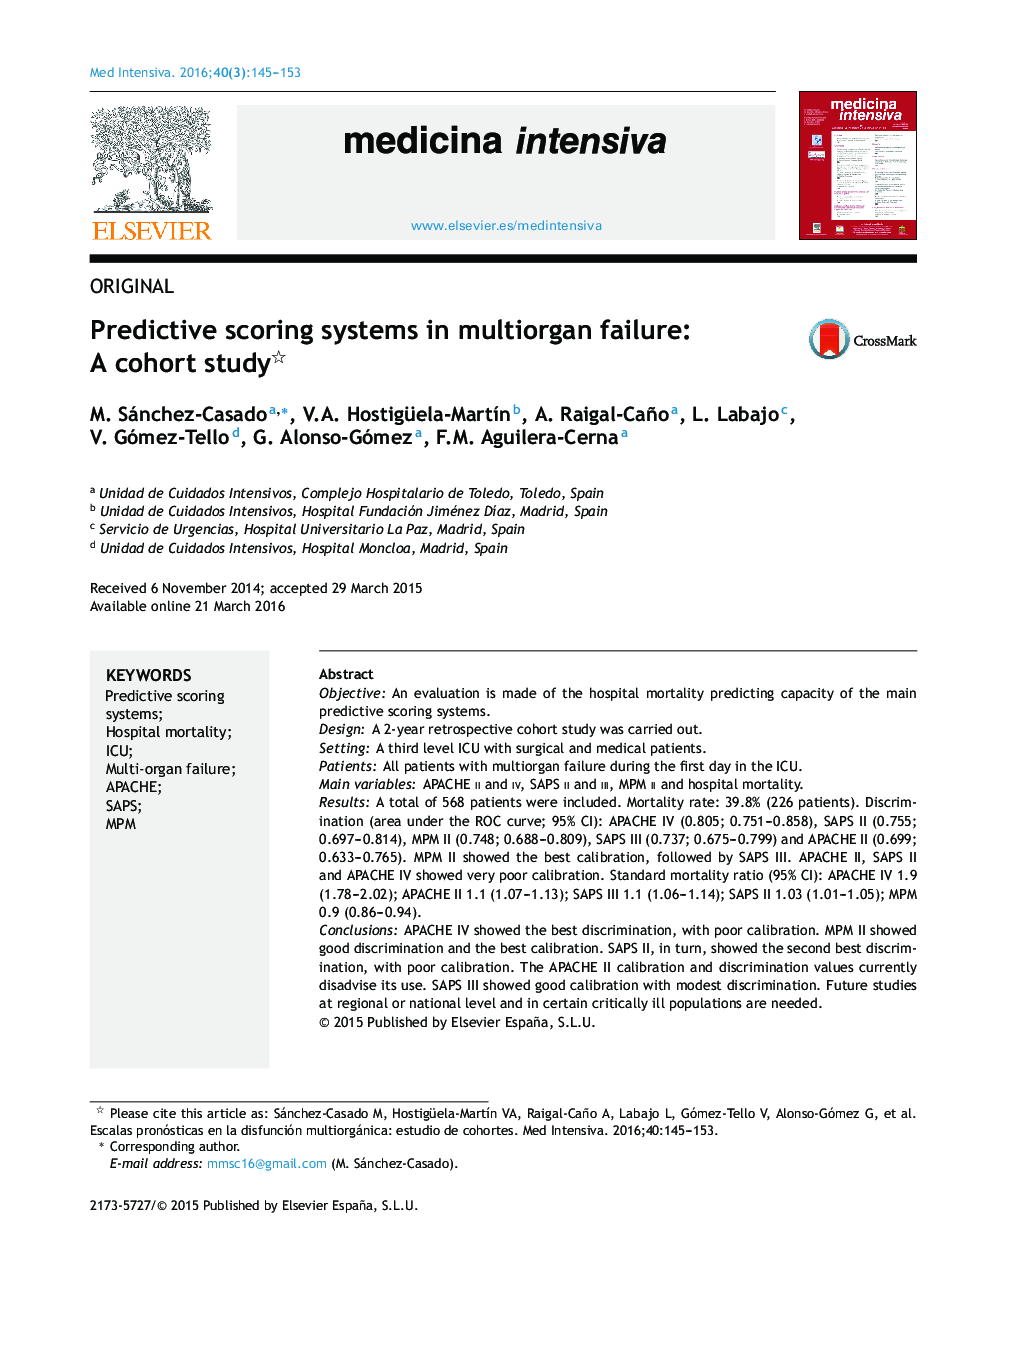 سیستم امتیازدهی پیش بینی شده در شکست چندگانه: یک مطالعه کوهورت